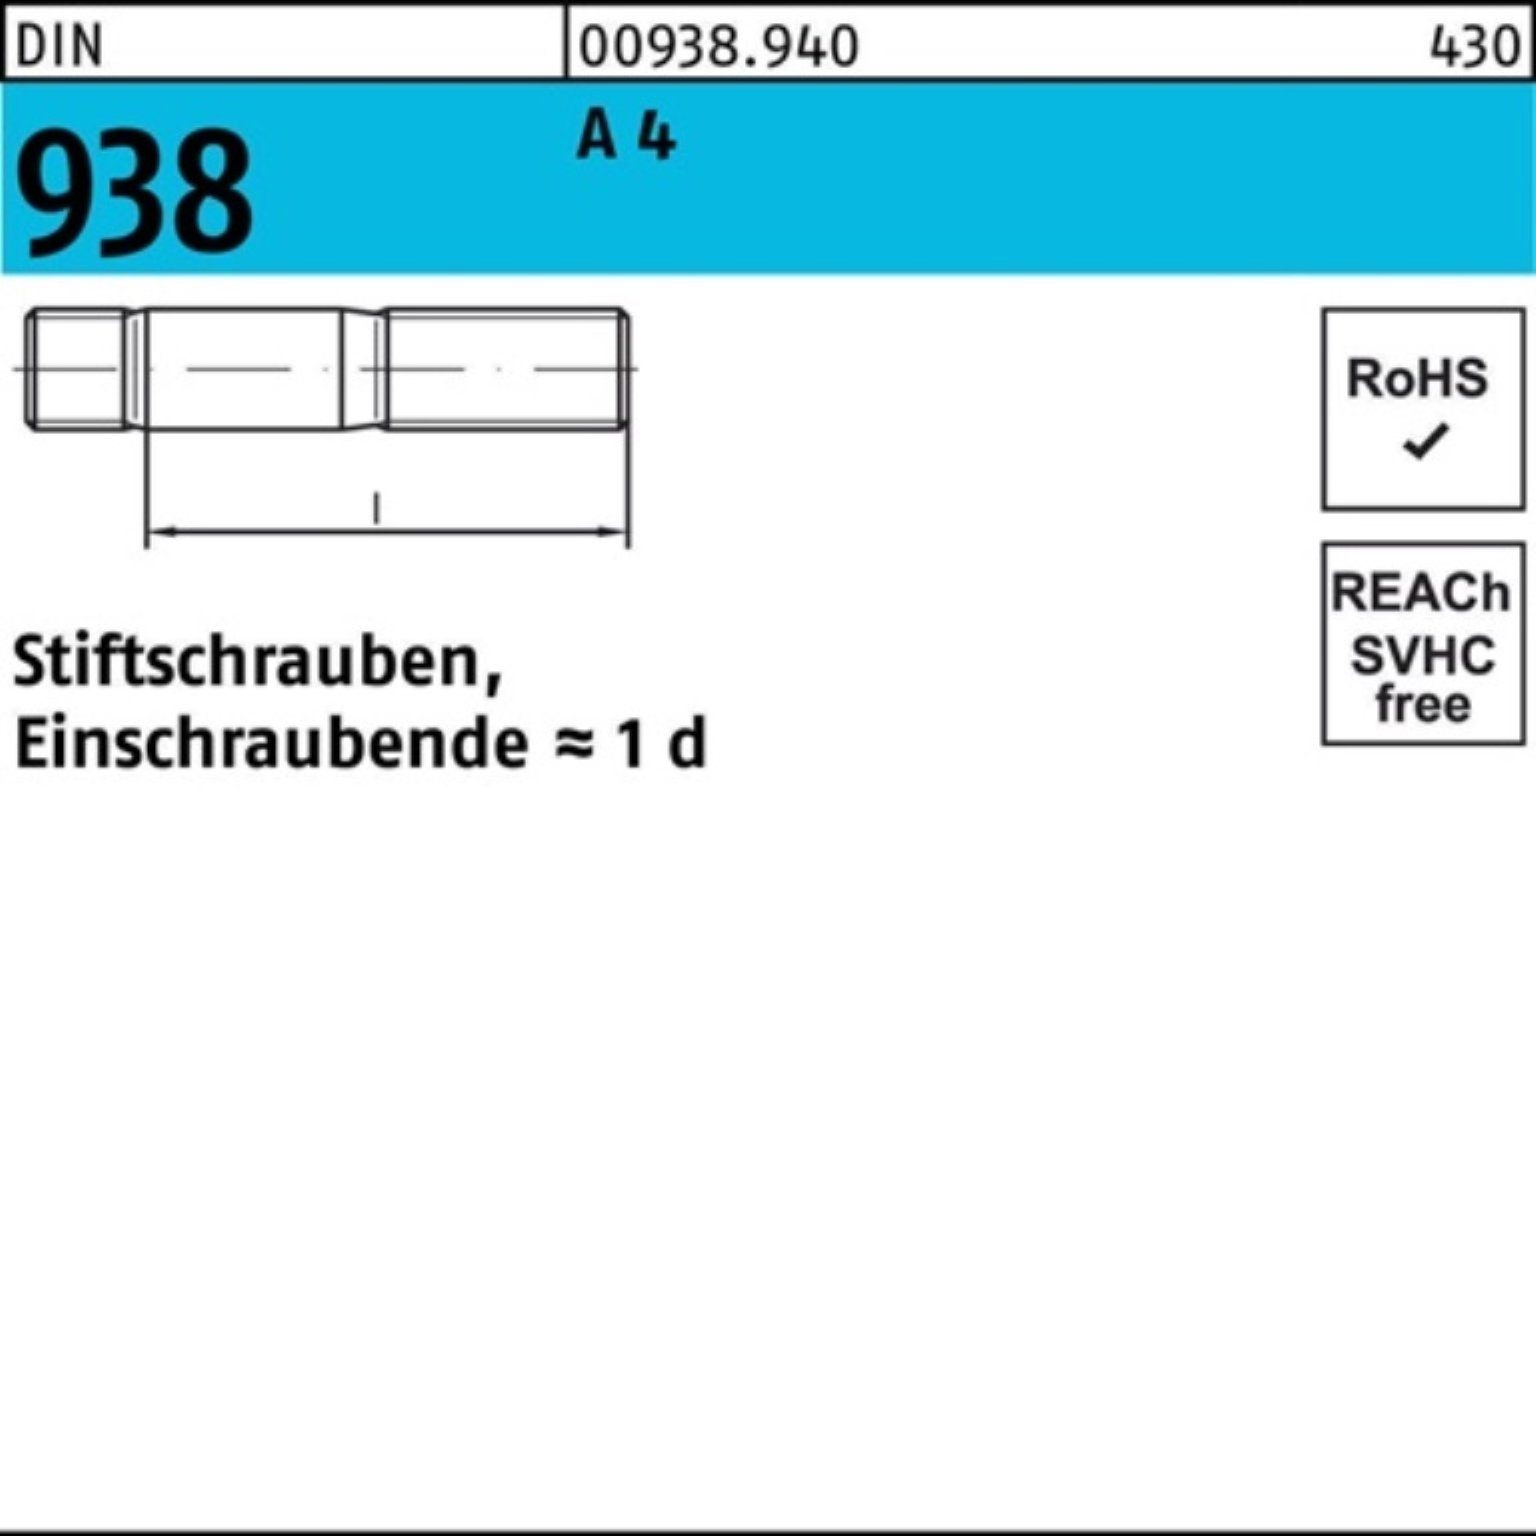 Reyher Stiftschraube 100er 4 DIN 30 A 938 4 938 25 M12x Sti Stiftschraube A DIN Stück Pack